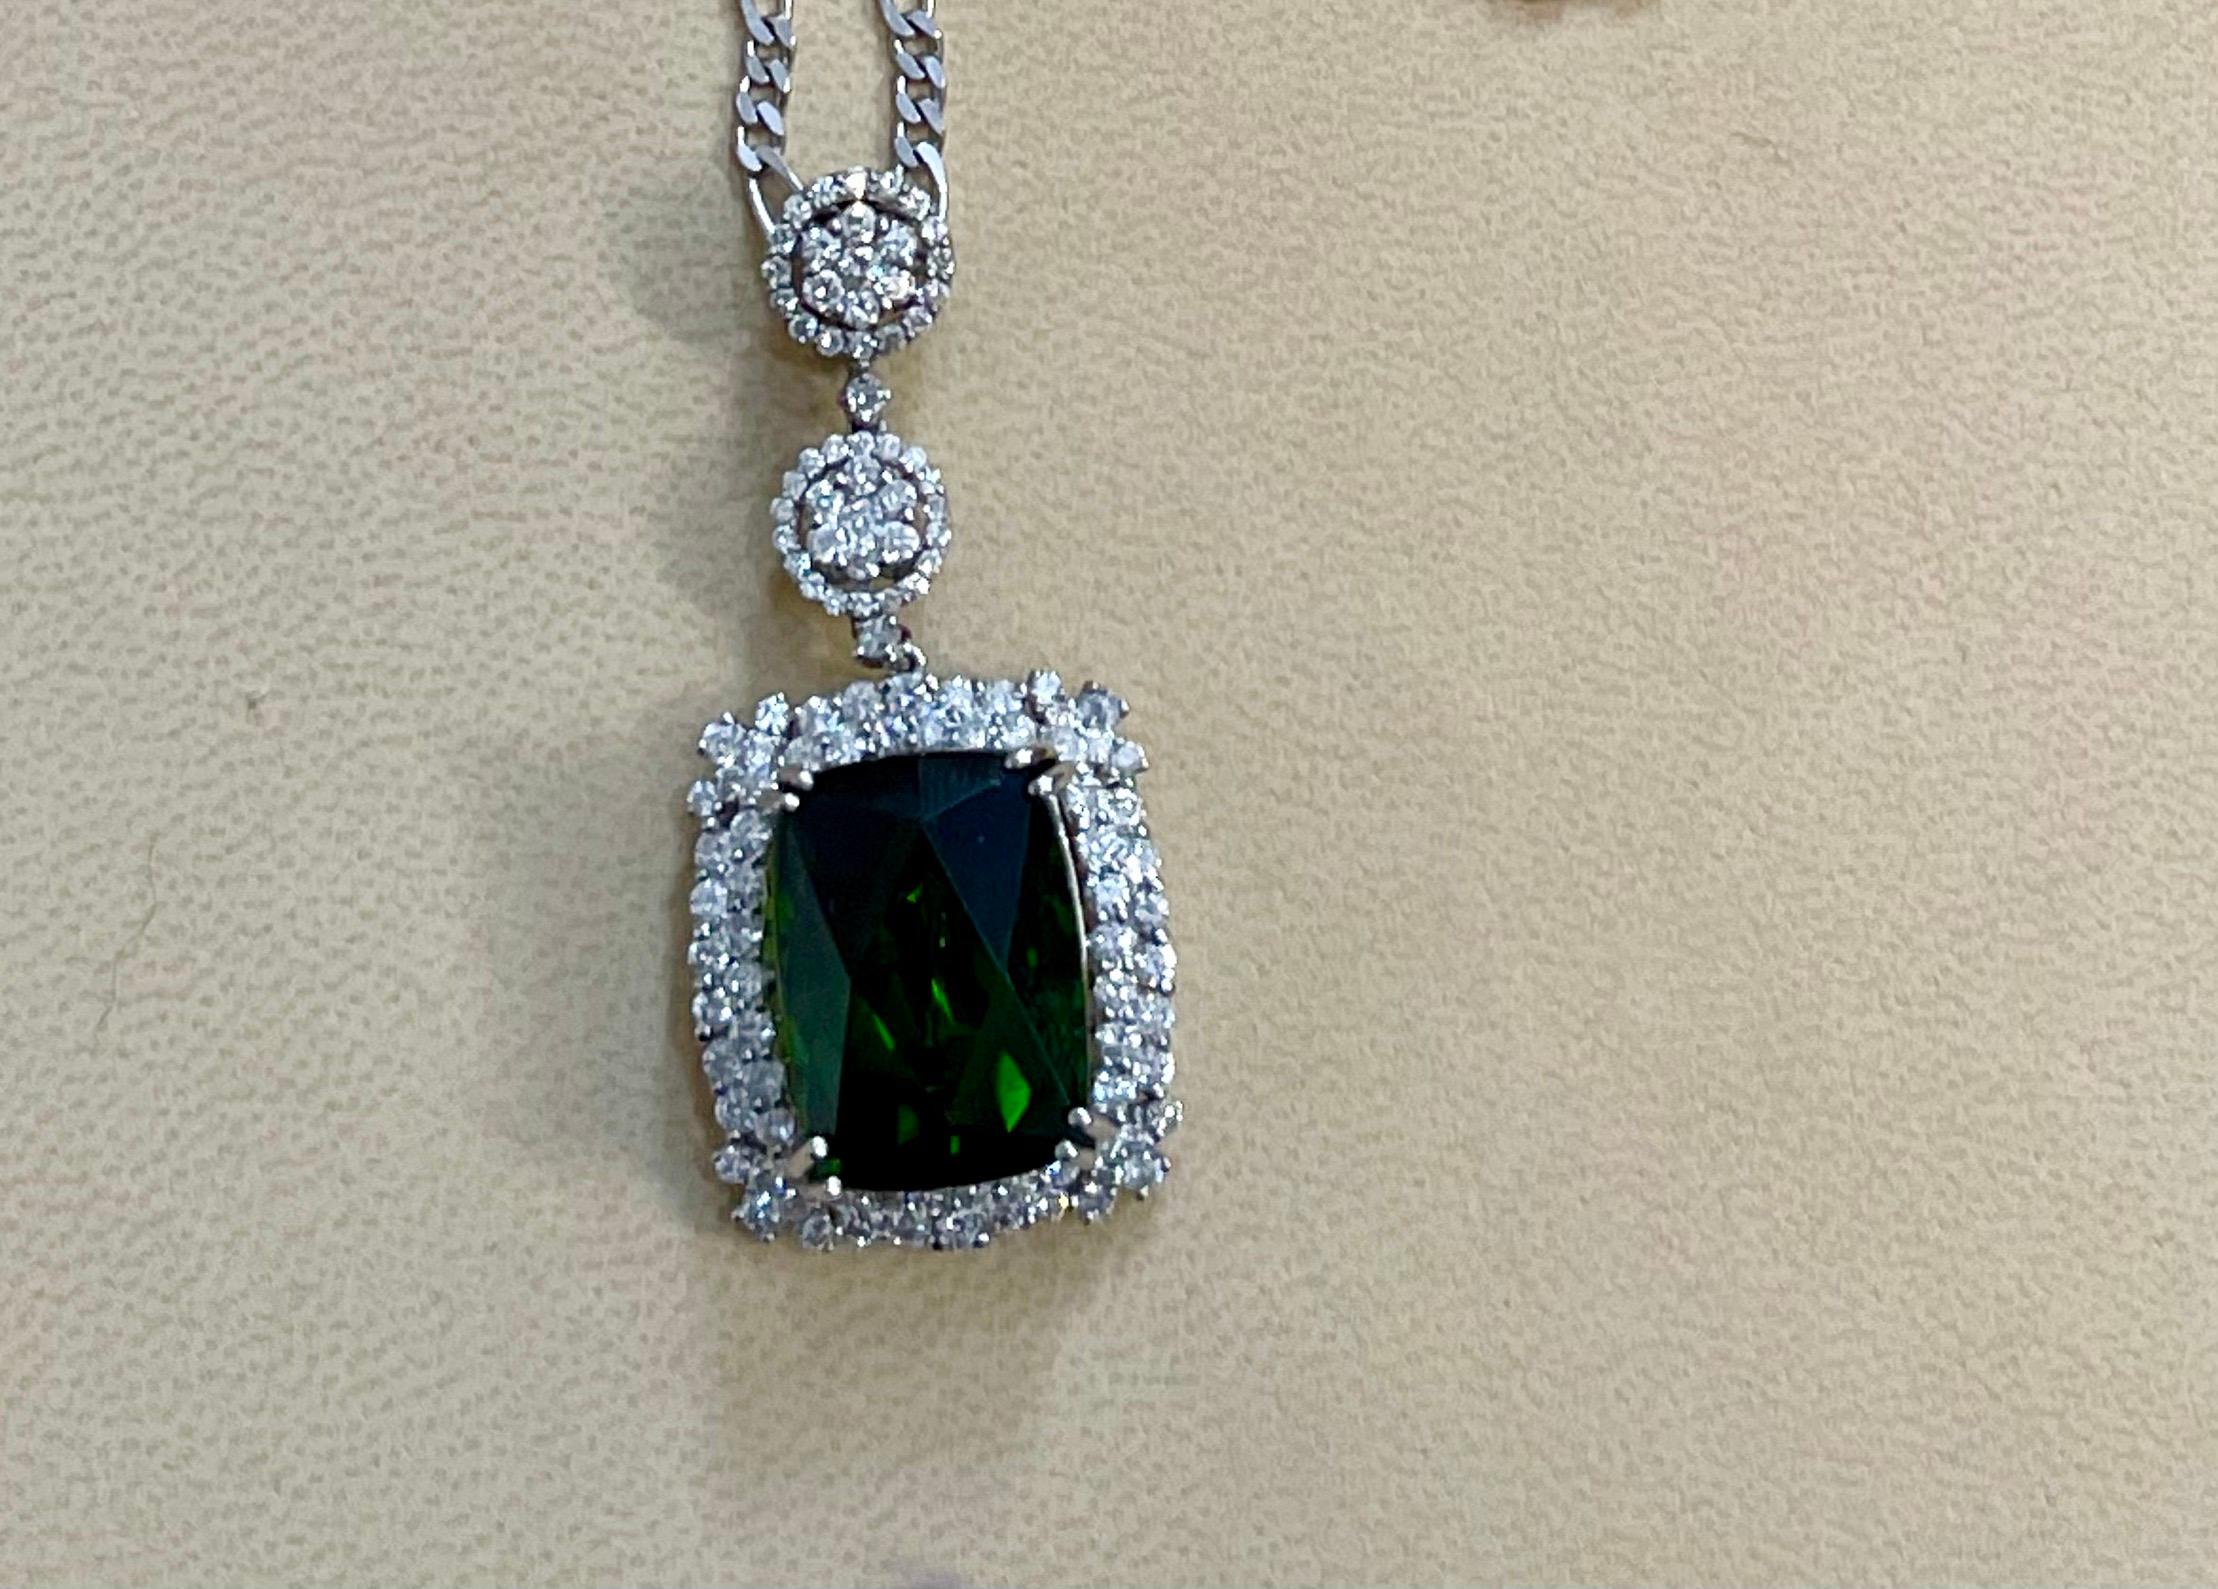 17 Carat Green Tourmaline and 4 Carat Diamond Pendant / Necklace 14 Karat Gold For Sale 6